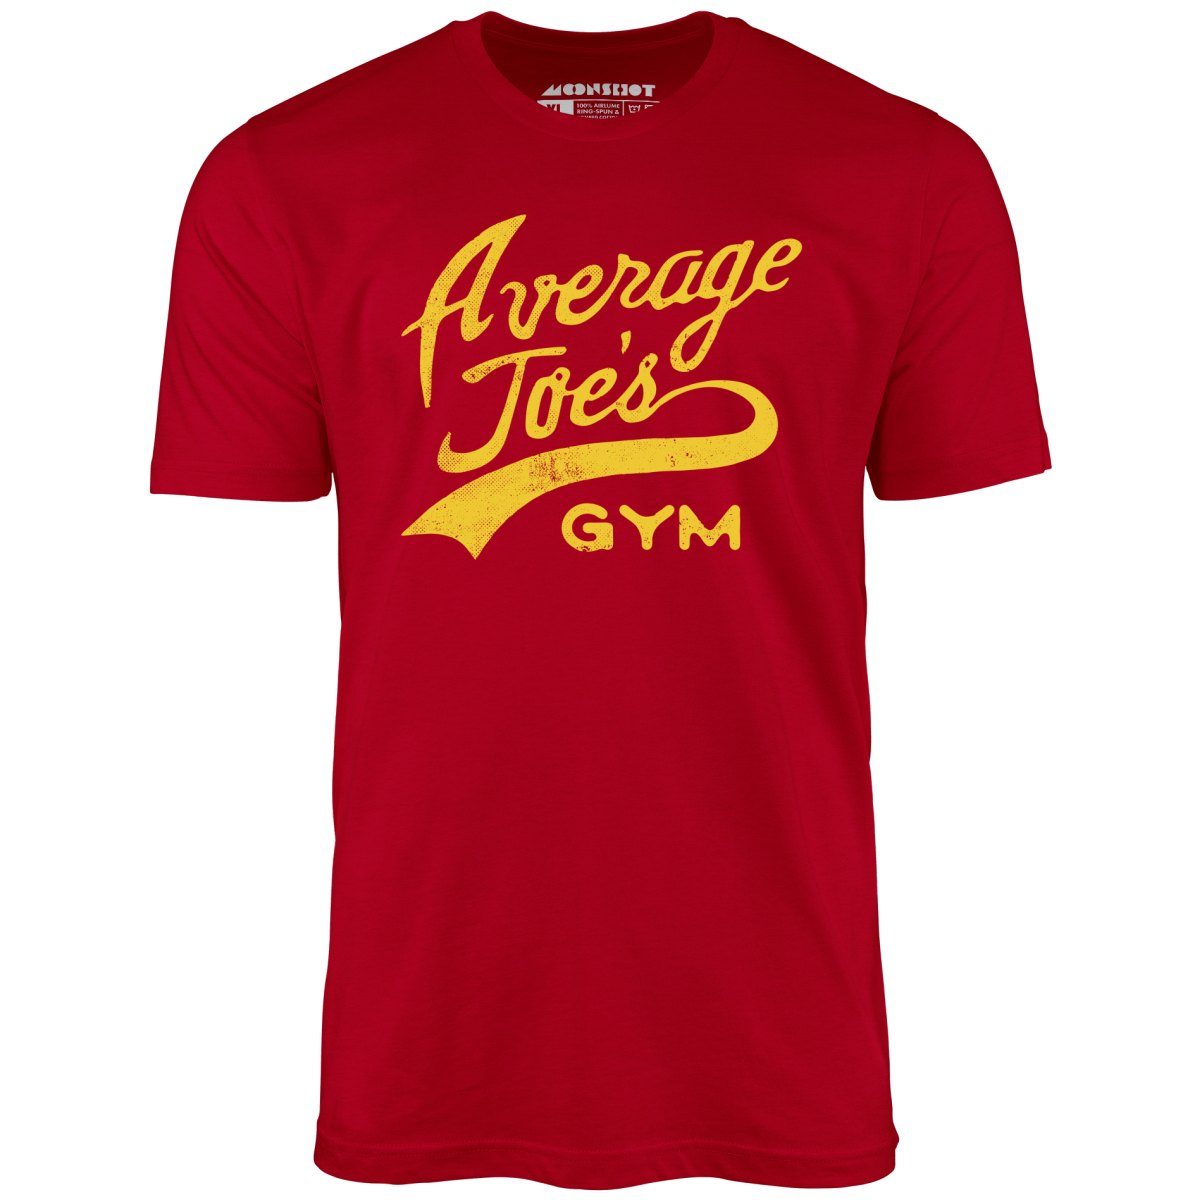 Average Joe's Gym - Unisex T-Shirt